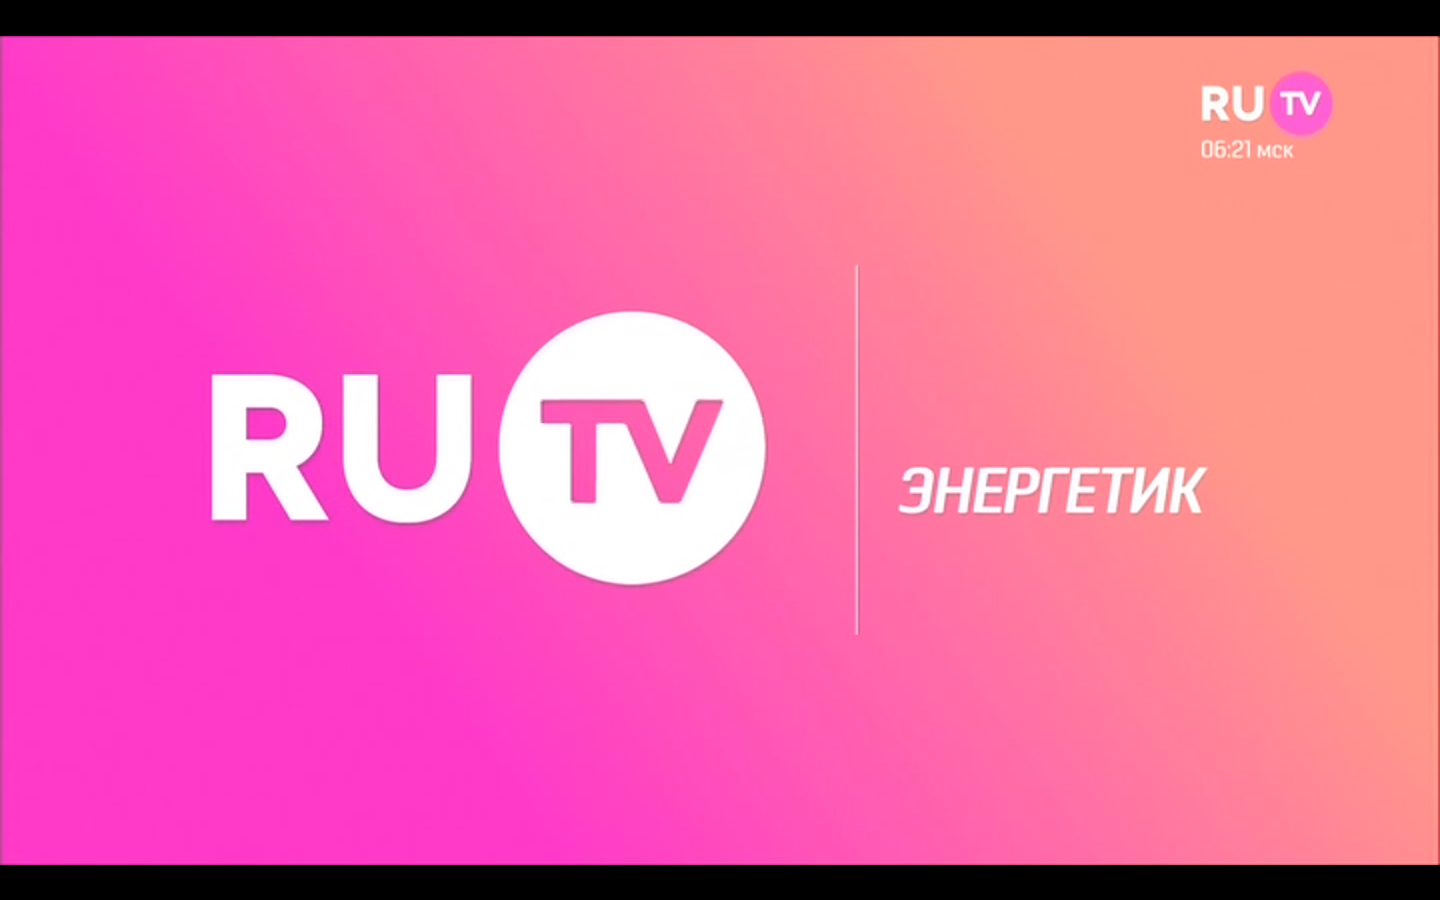 Ру тв линк. Ру ТВ. Ru TV логотип. Логотип канала ру ТВ. Ру ТВ заставка.